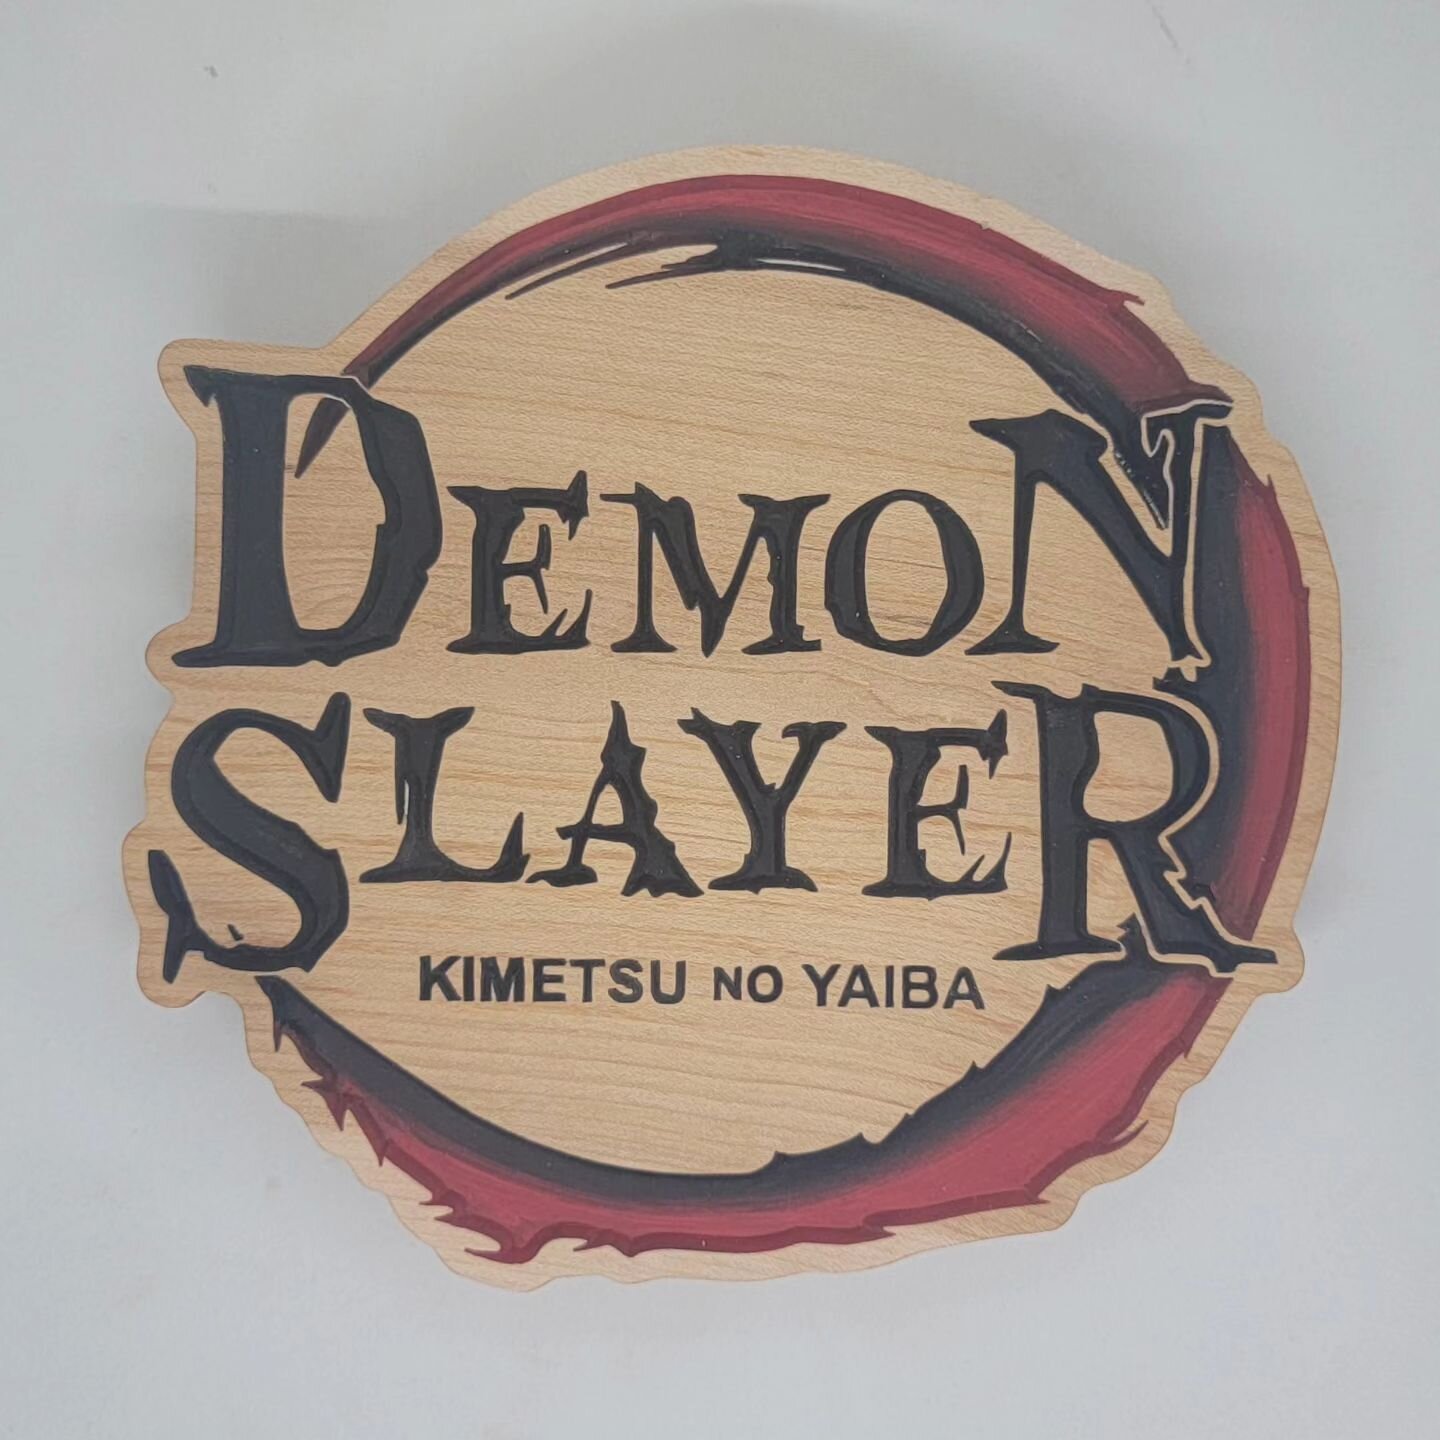 Custom Demon Slayer carving in some maple 🍁 definitely some wicked action scenes! 
&bull;
&bull;
&bull;
&bull;
&bull;
#carpentry #carving #new #smallshop #smallbusiness #custommade #custom #customsign #sign #maple #anime #demonslayer #kimetsunoyaiba